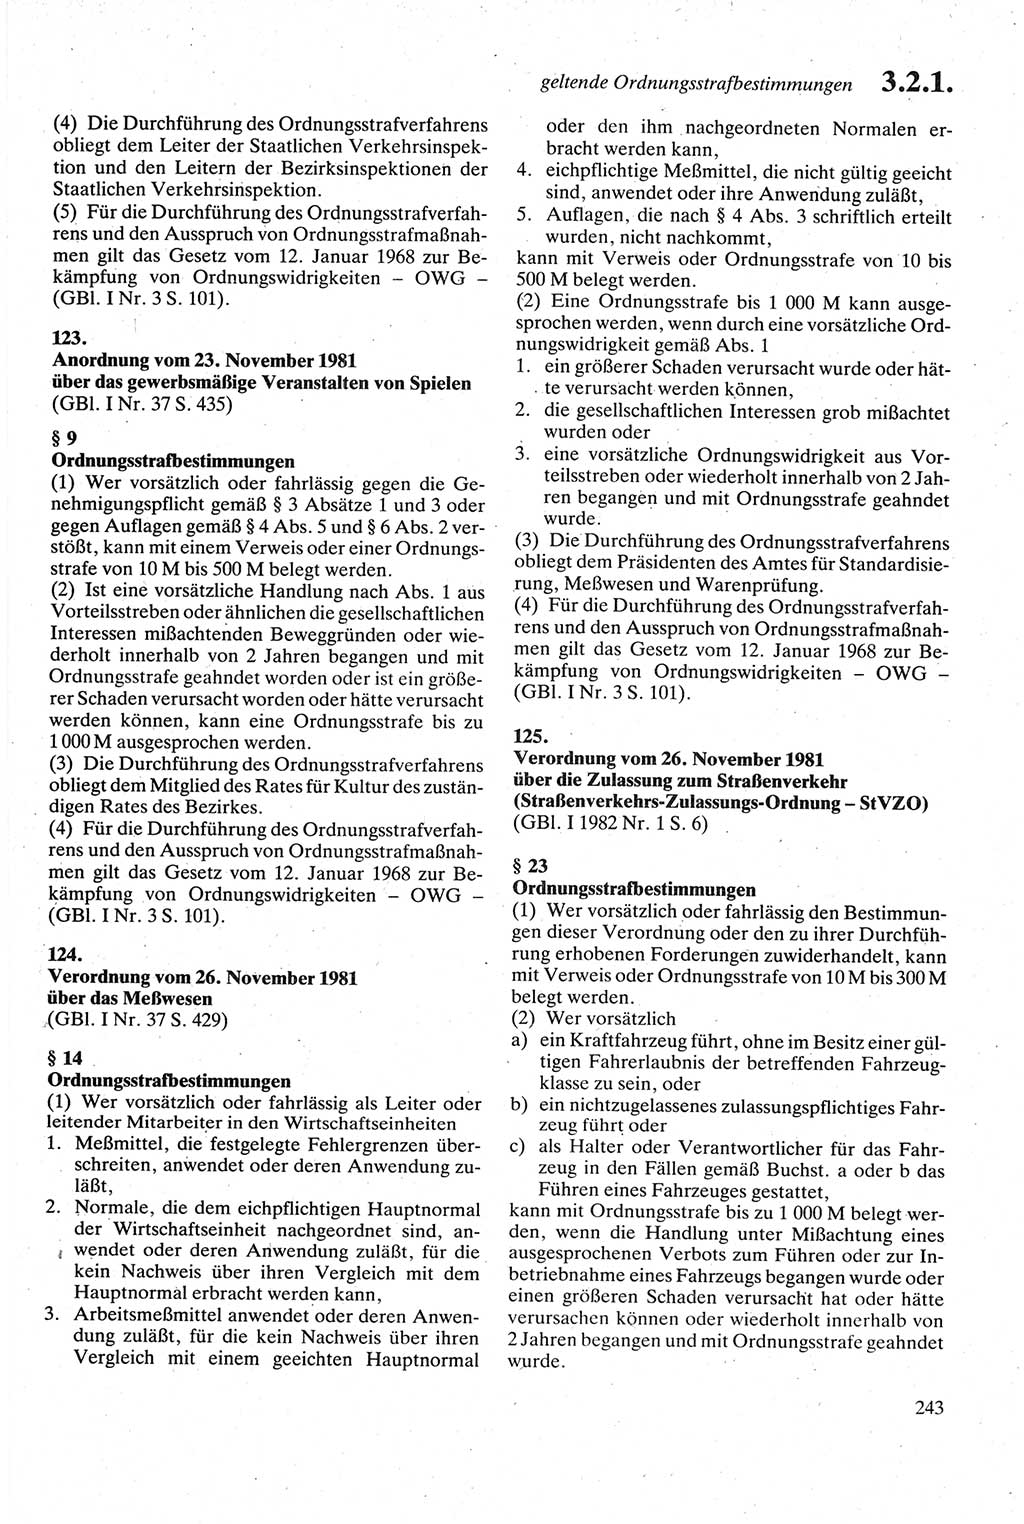 Strafgesetzbuch (StGB) der Deutschen Demokratischen Republik (DDR) sowie angrenzende Gesetze und Bestimmungen 1979, Seite 243 (StGB DDR Ges. Best. 1979, S. 243)